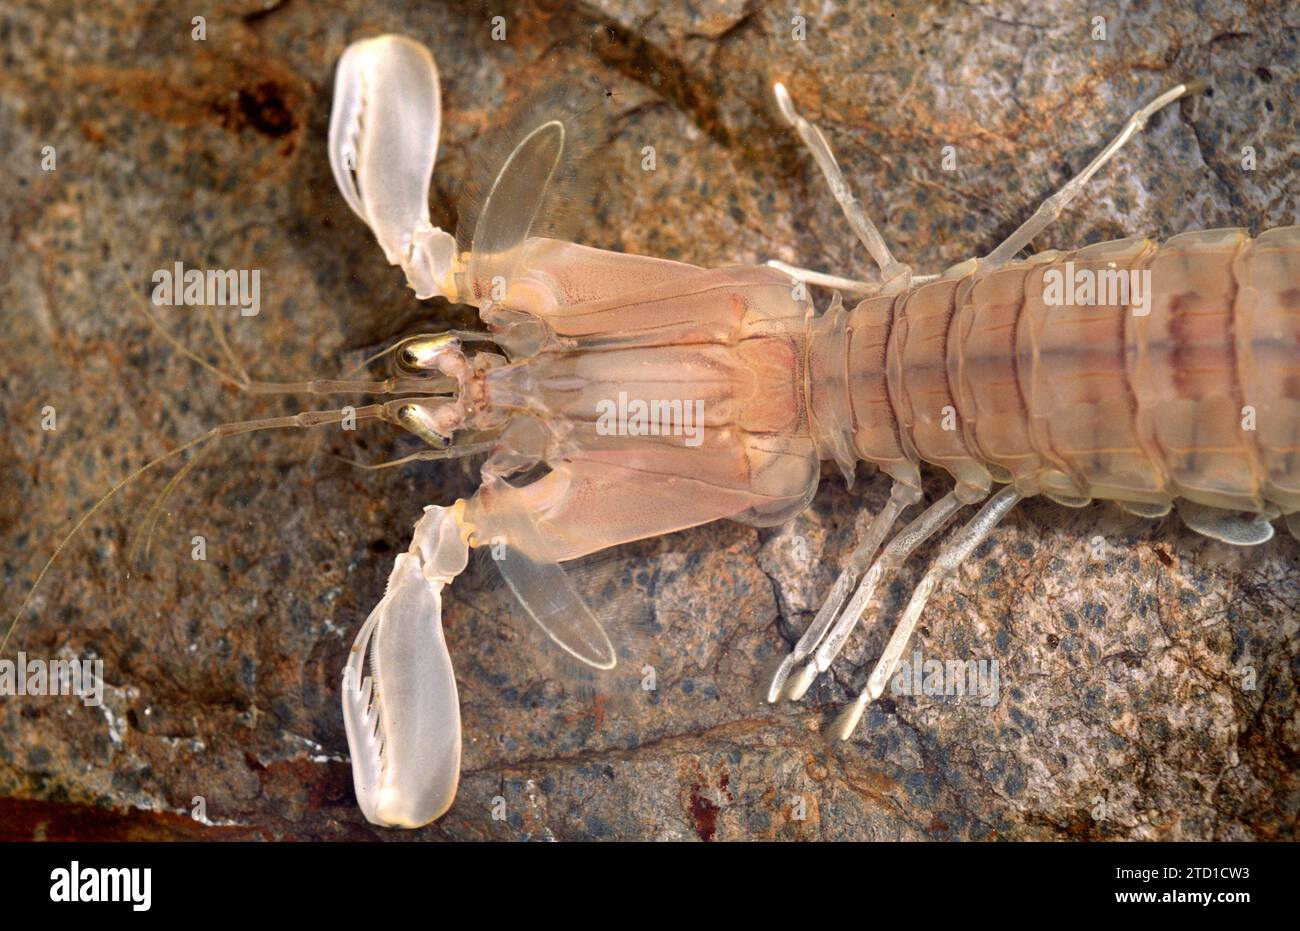 La crevette Mantis (Squilla mantis) est un crustacé comestible originaire de la mer Méditerranée et de l'océan Atlantique est. Détail céphalothorax. Banque D'Images